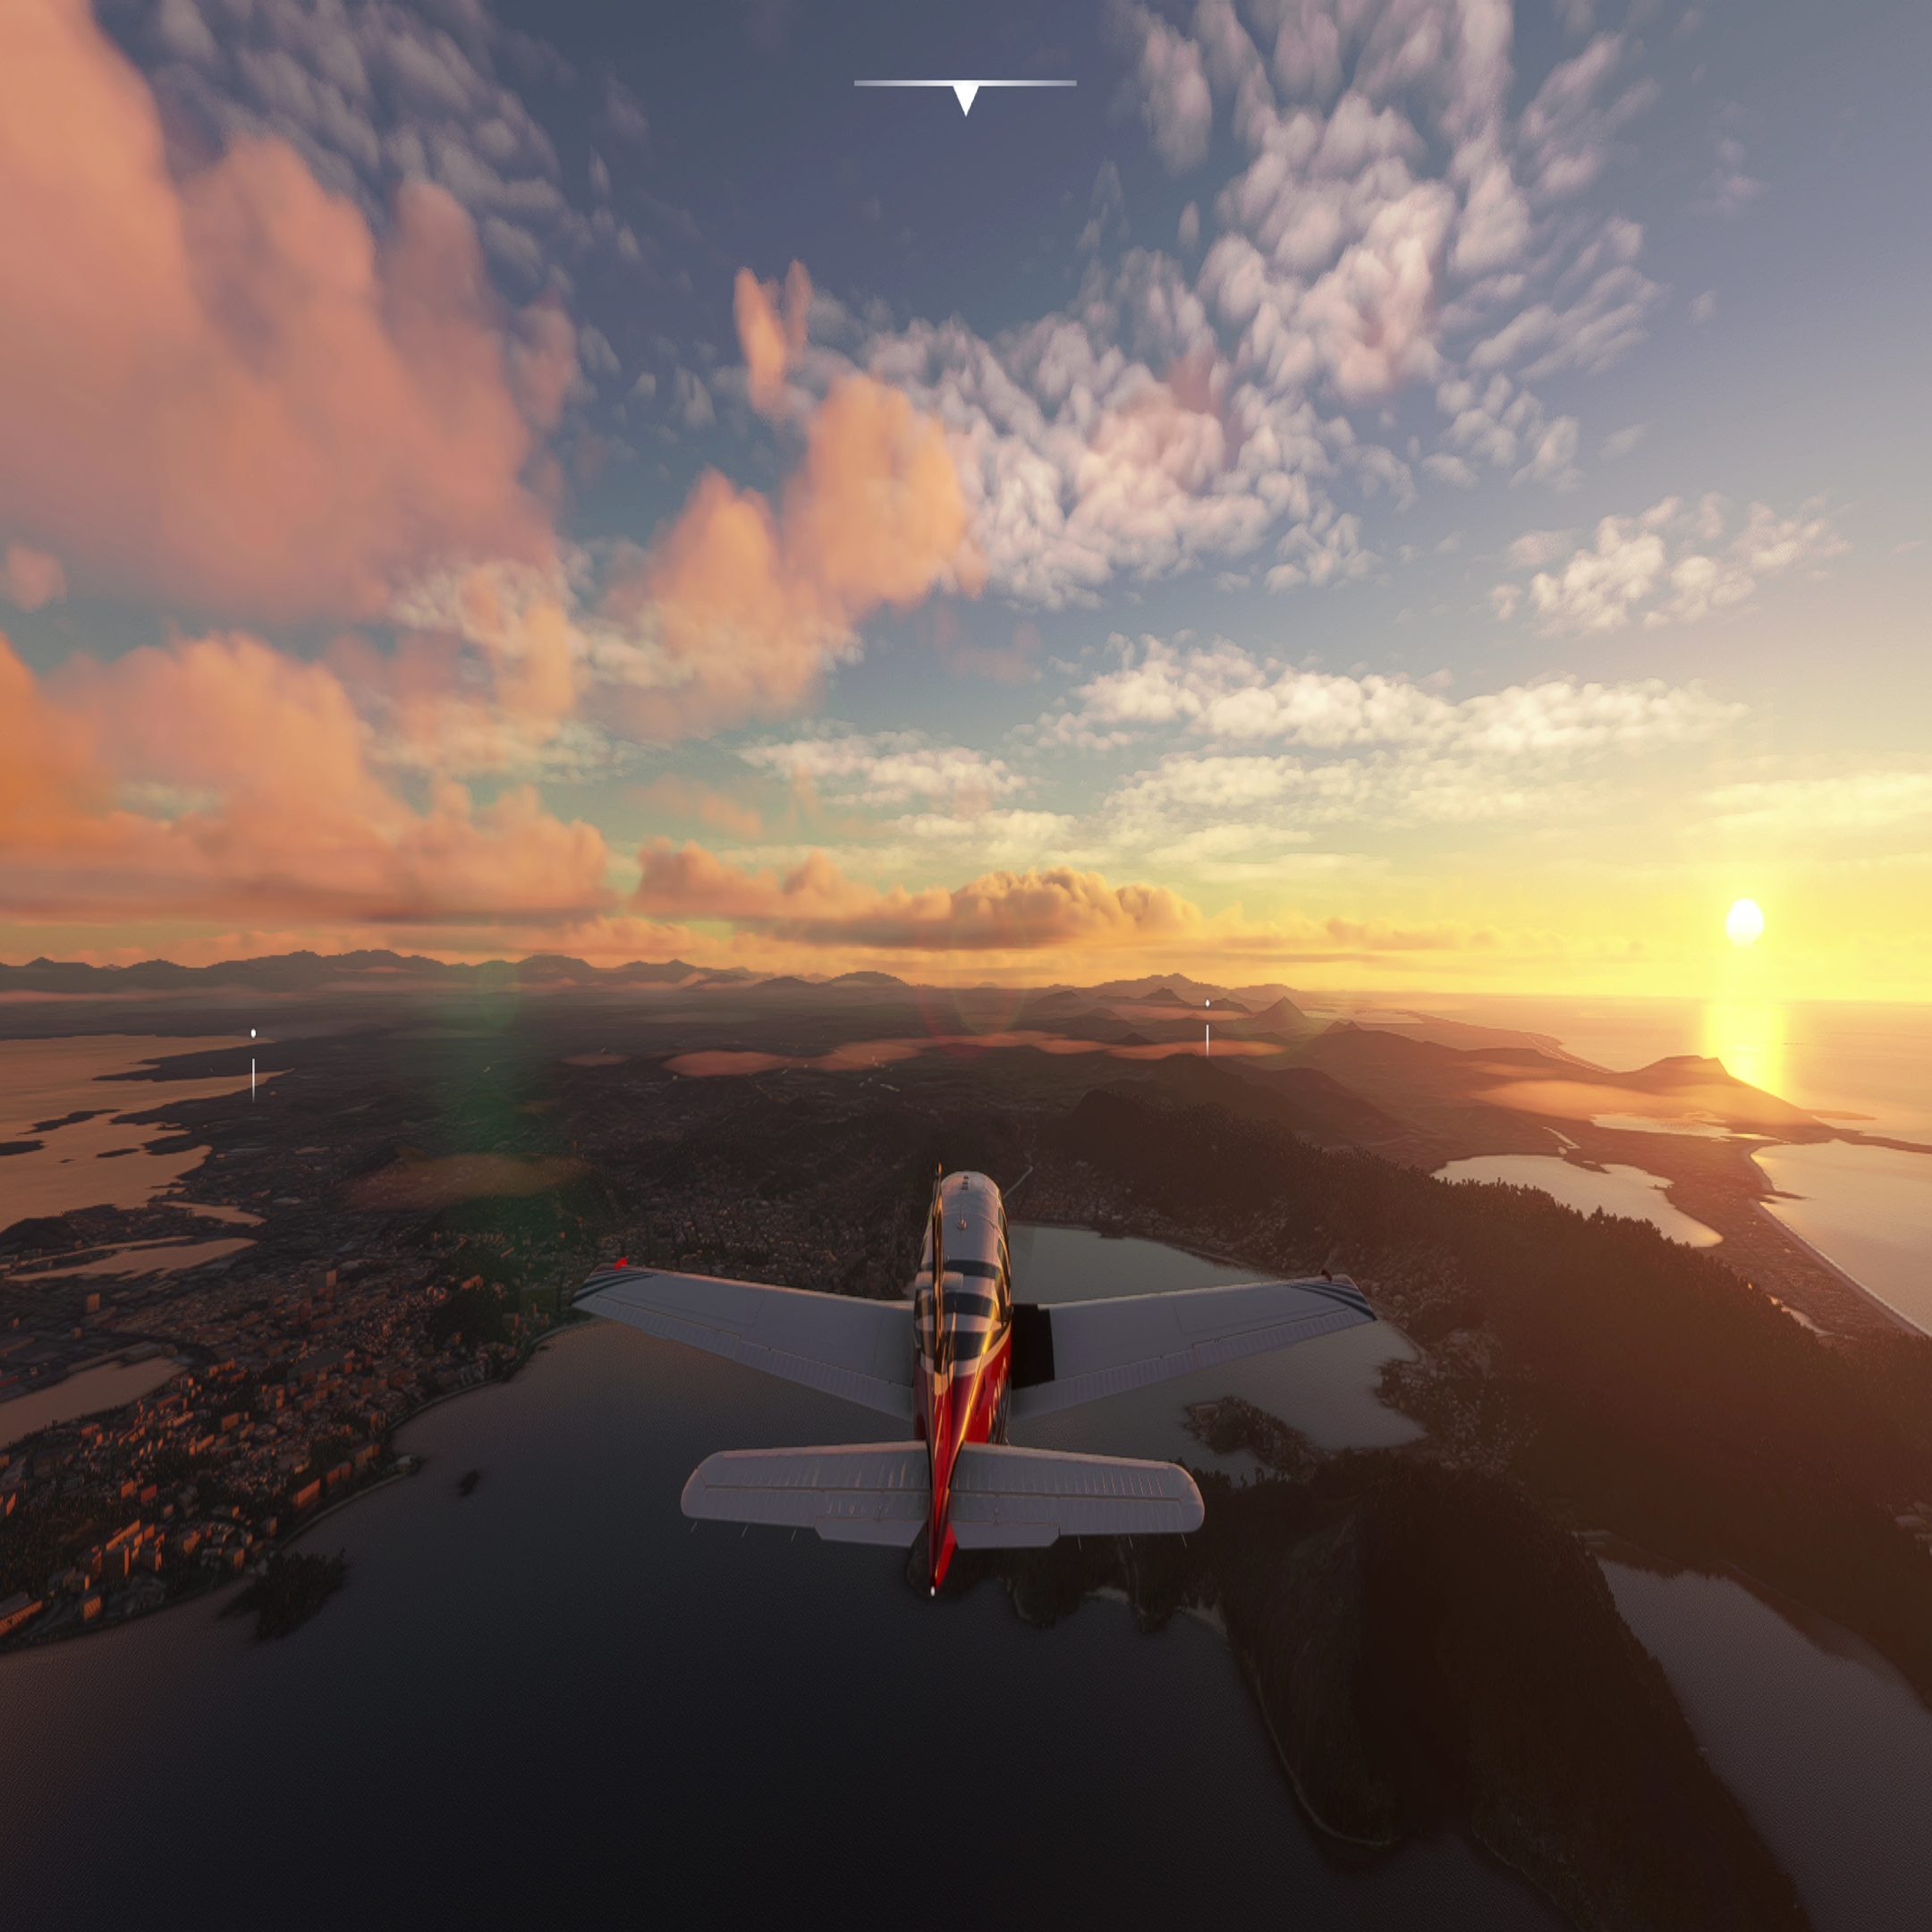 Flight Simulator 2020 - PS4 vs Xbox One Graphics Comparison 